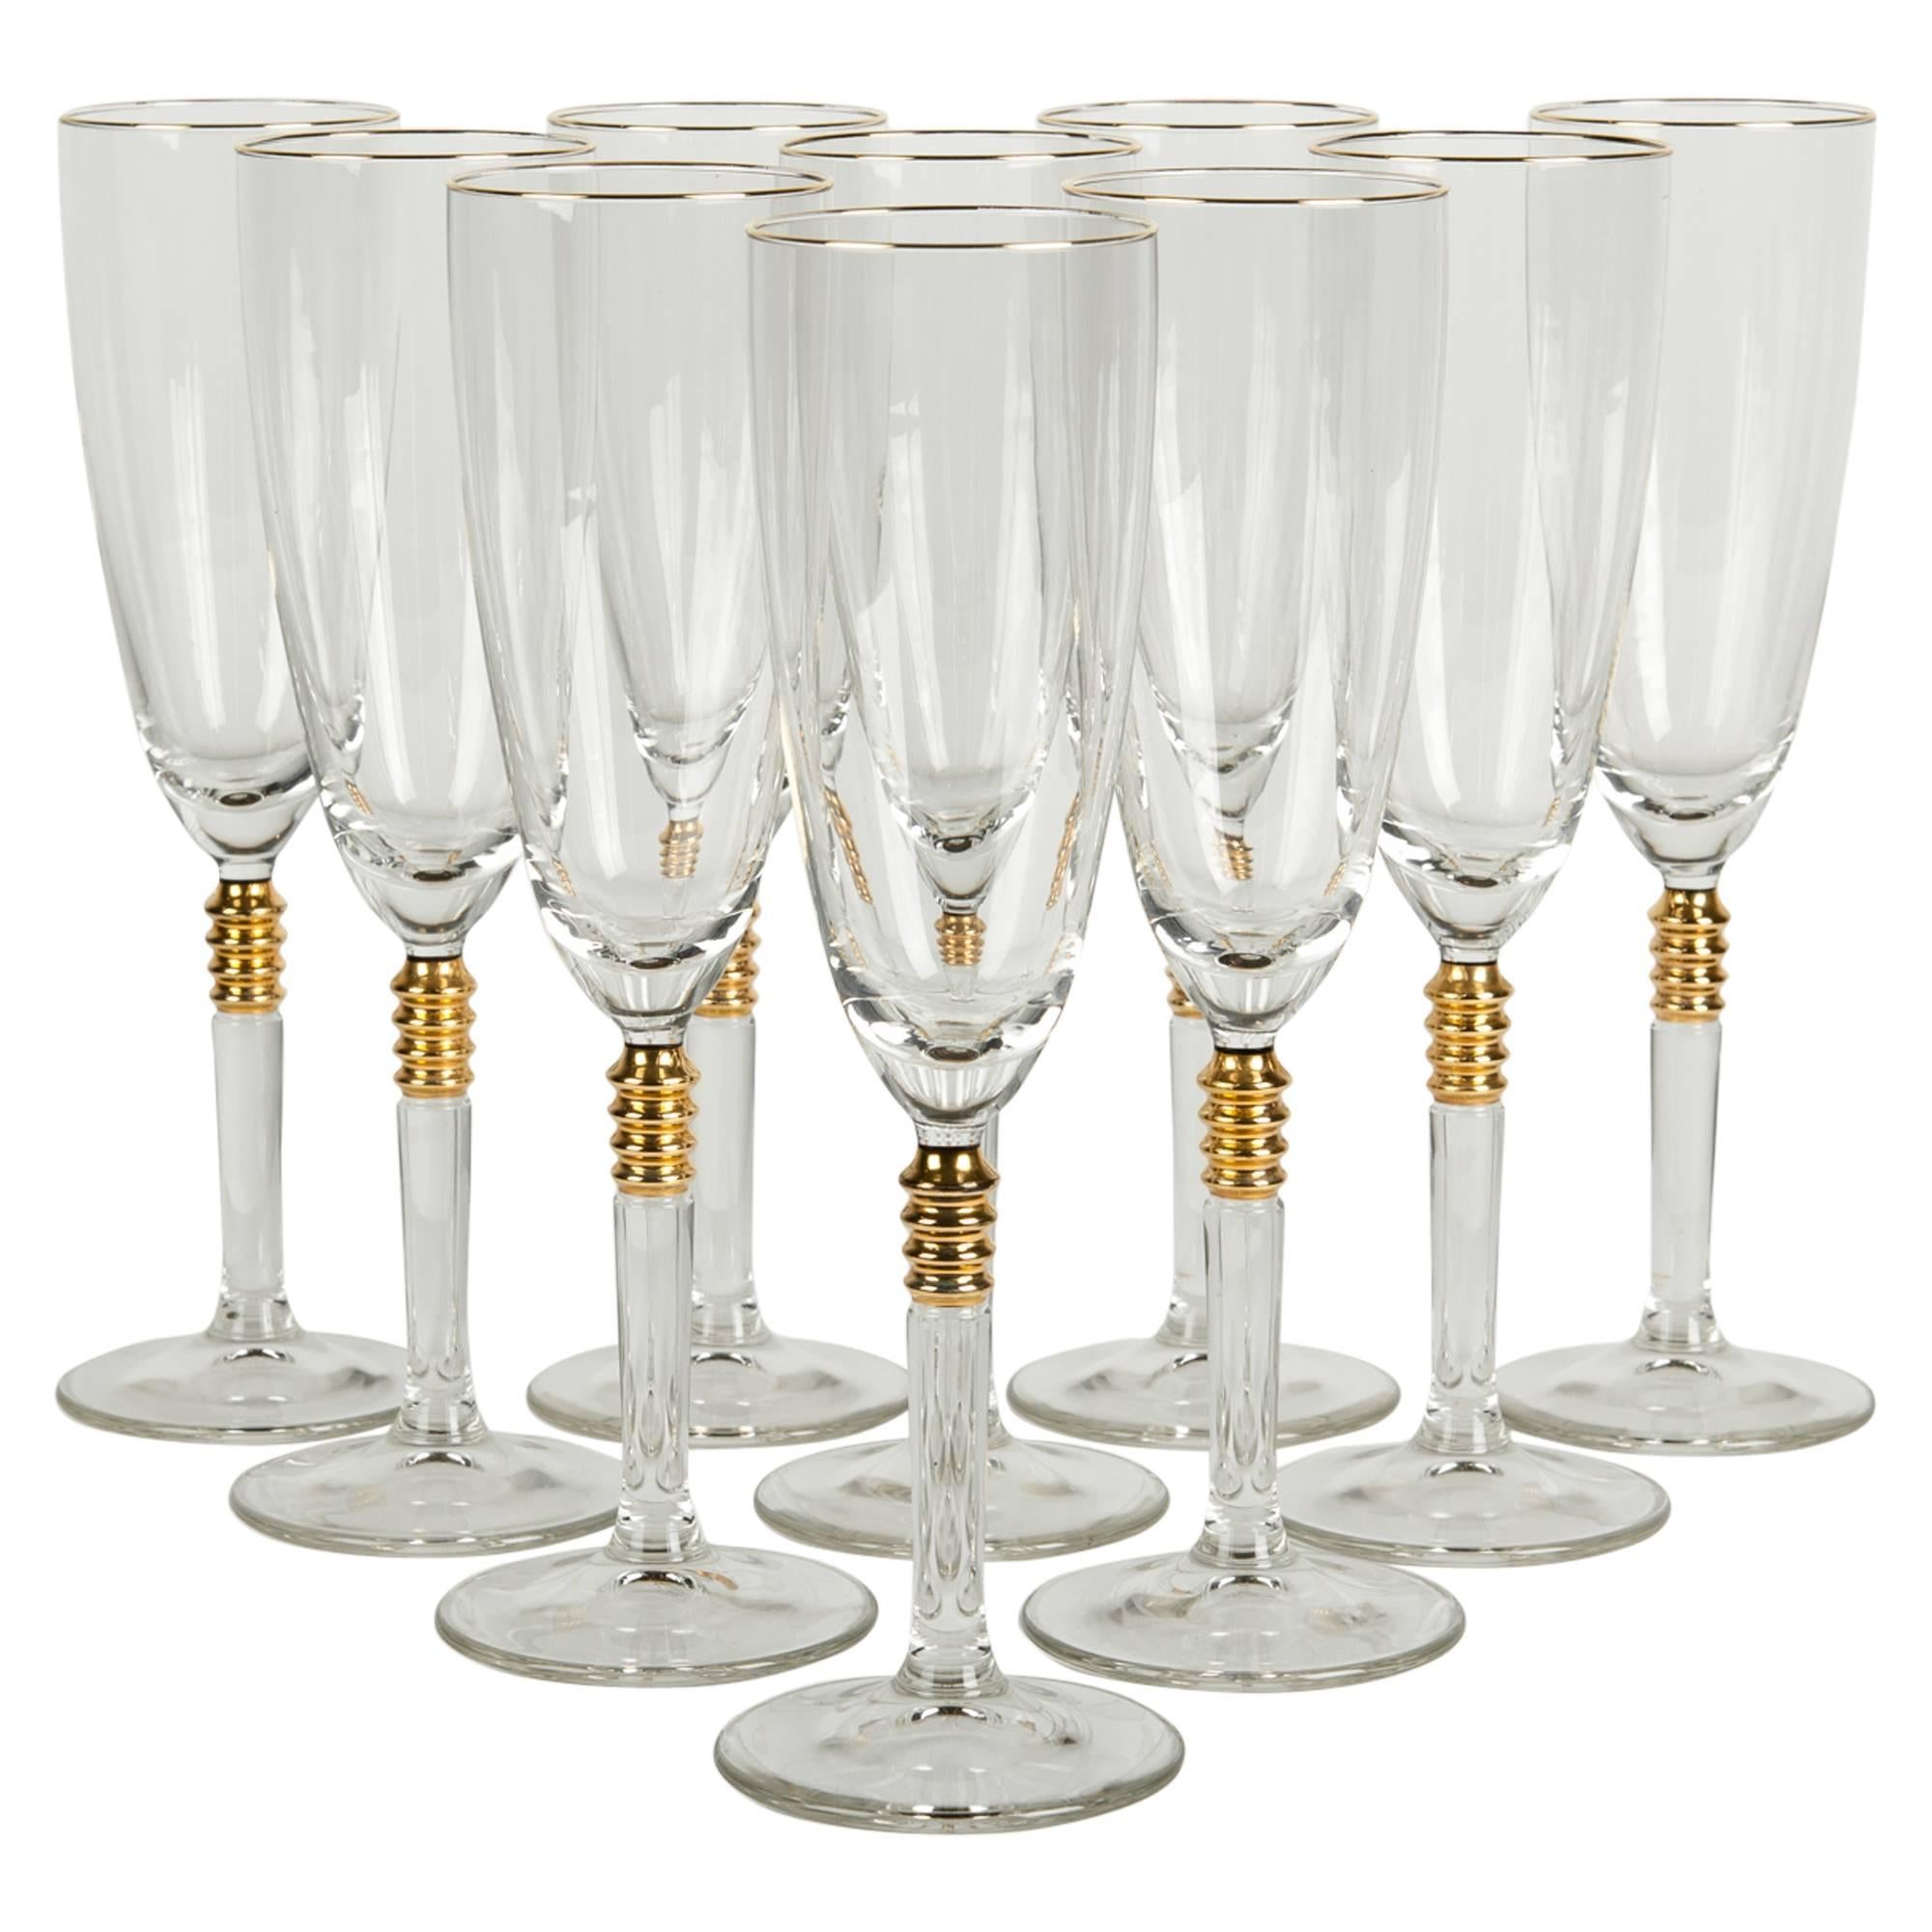 Vintage Crystal with Gold Design Champagne Flute Set of 12